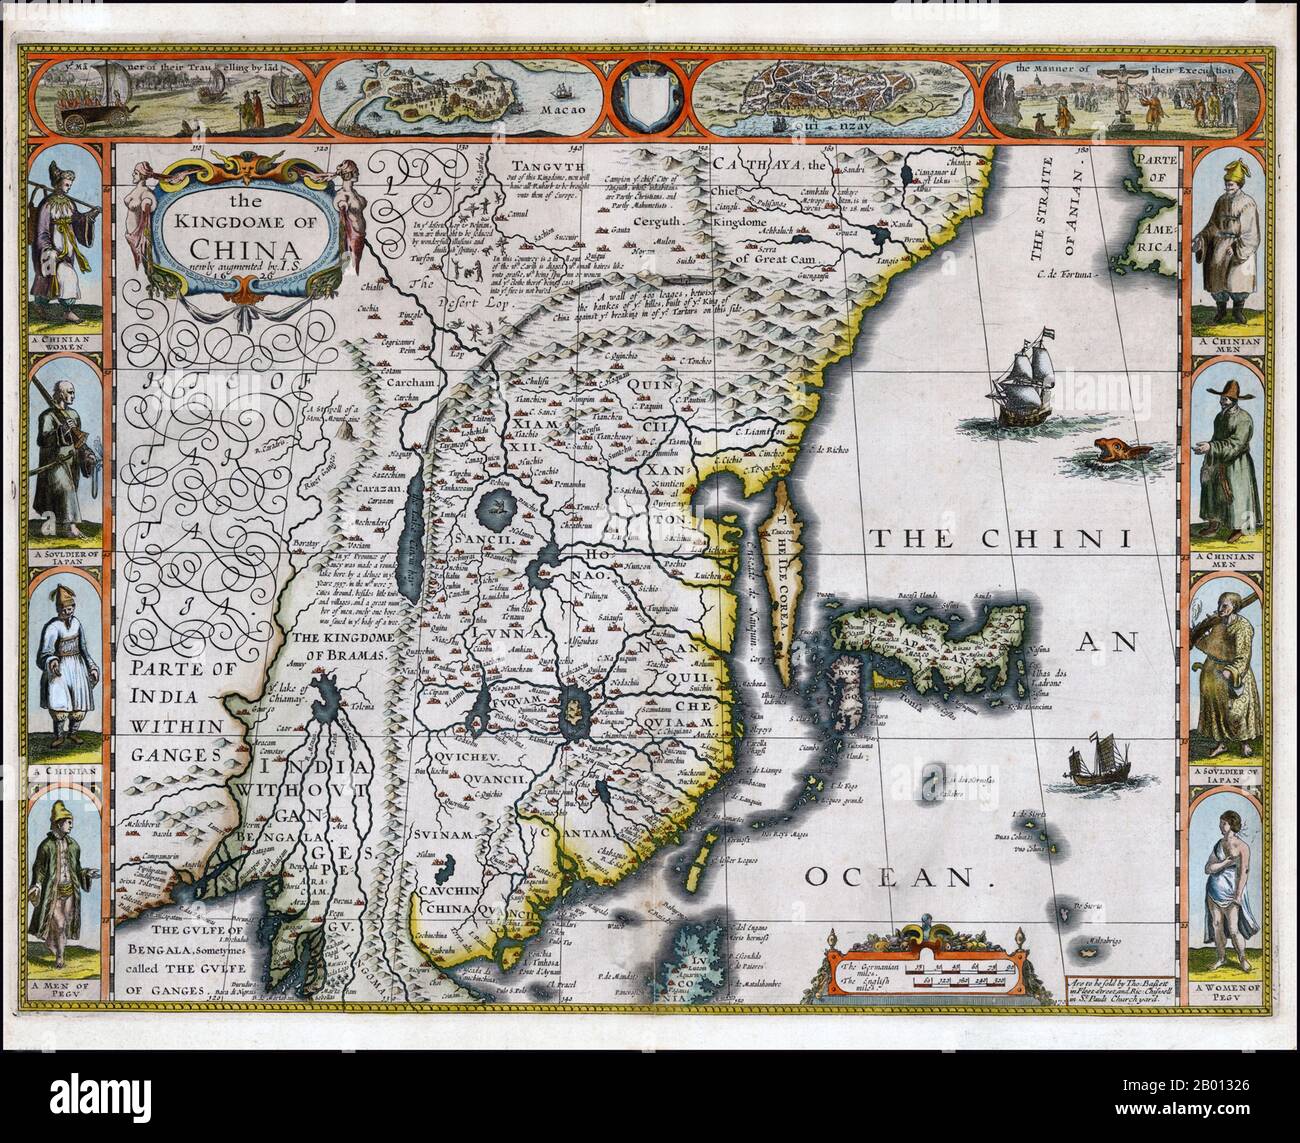 Cina: Una mappa inglese dell'Impero Ming di John Speed (1552 - 28 luglio 1629), 1626. John Speed (1552-1629) è stato un famoso cartografo elisabettiano e storico. È stato considerato come uno dei più noti mapmakers inglesi del primo periodo moderno. Questa mappa è stata prodotta verso la fine della dinastia Ming (1368-1644). Foto Stock